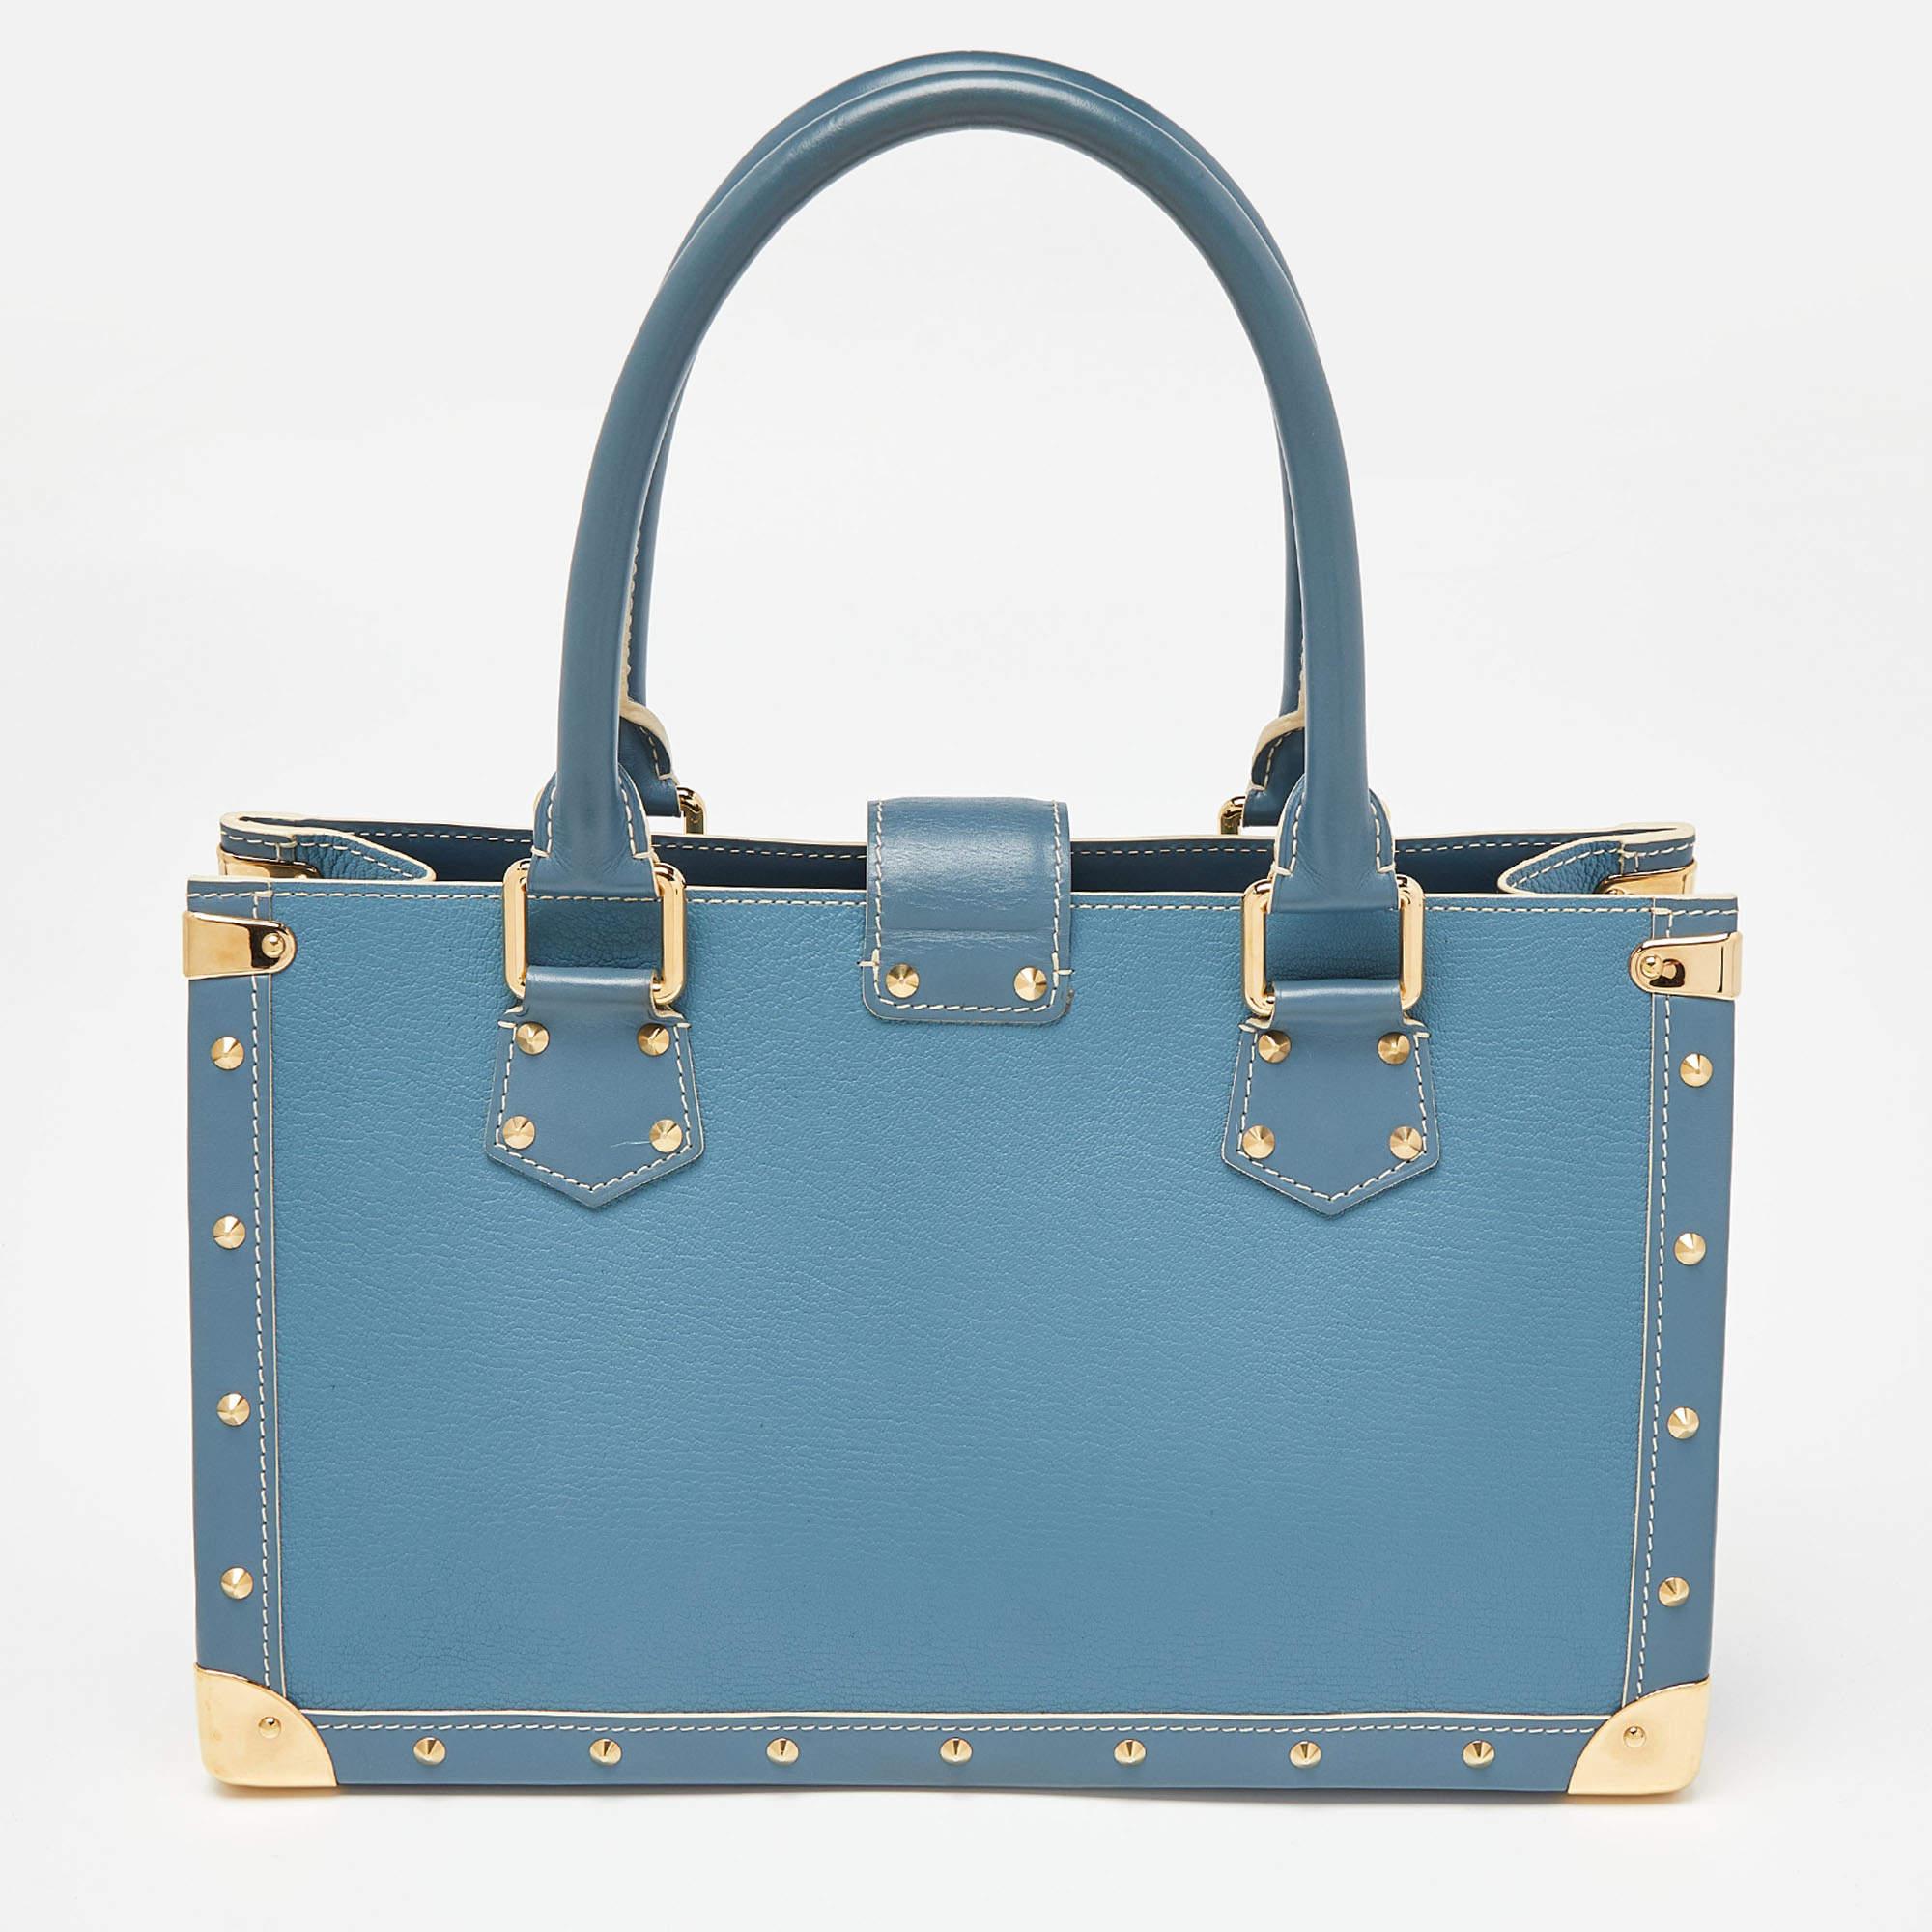 Gönnen Sie sich Luxus mit dieser Louis Vuitton Tasche. Sorgfältig aus hochwertigen Materialien gefertigt, vereint es exquisites Design, tadellose Handwerkskunst und zeitlose Eleganz. Erhöhen Sie Ihren Stil mit diesem modischen Accessoire.

Enthält: